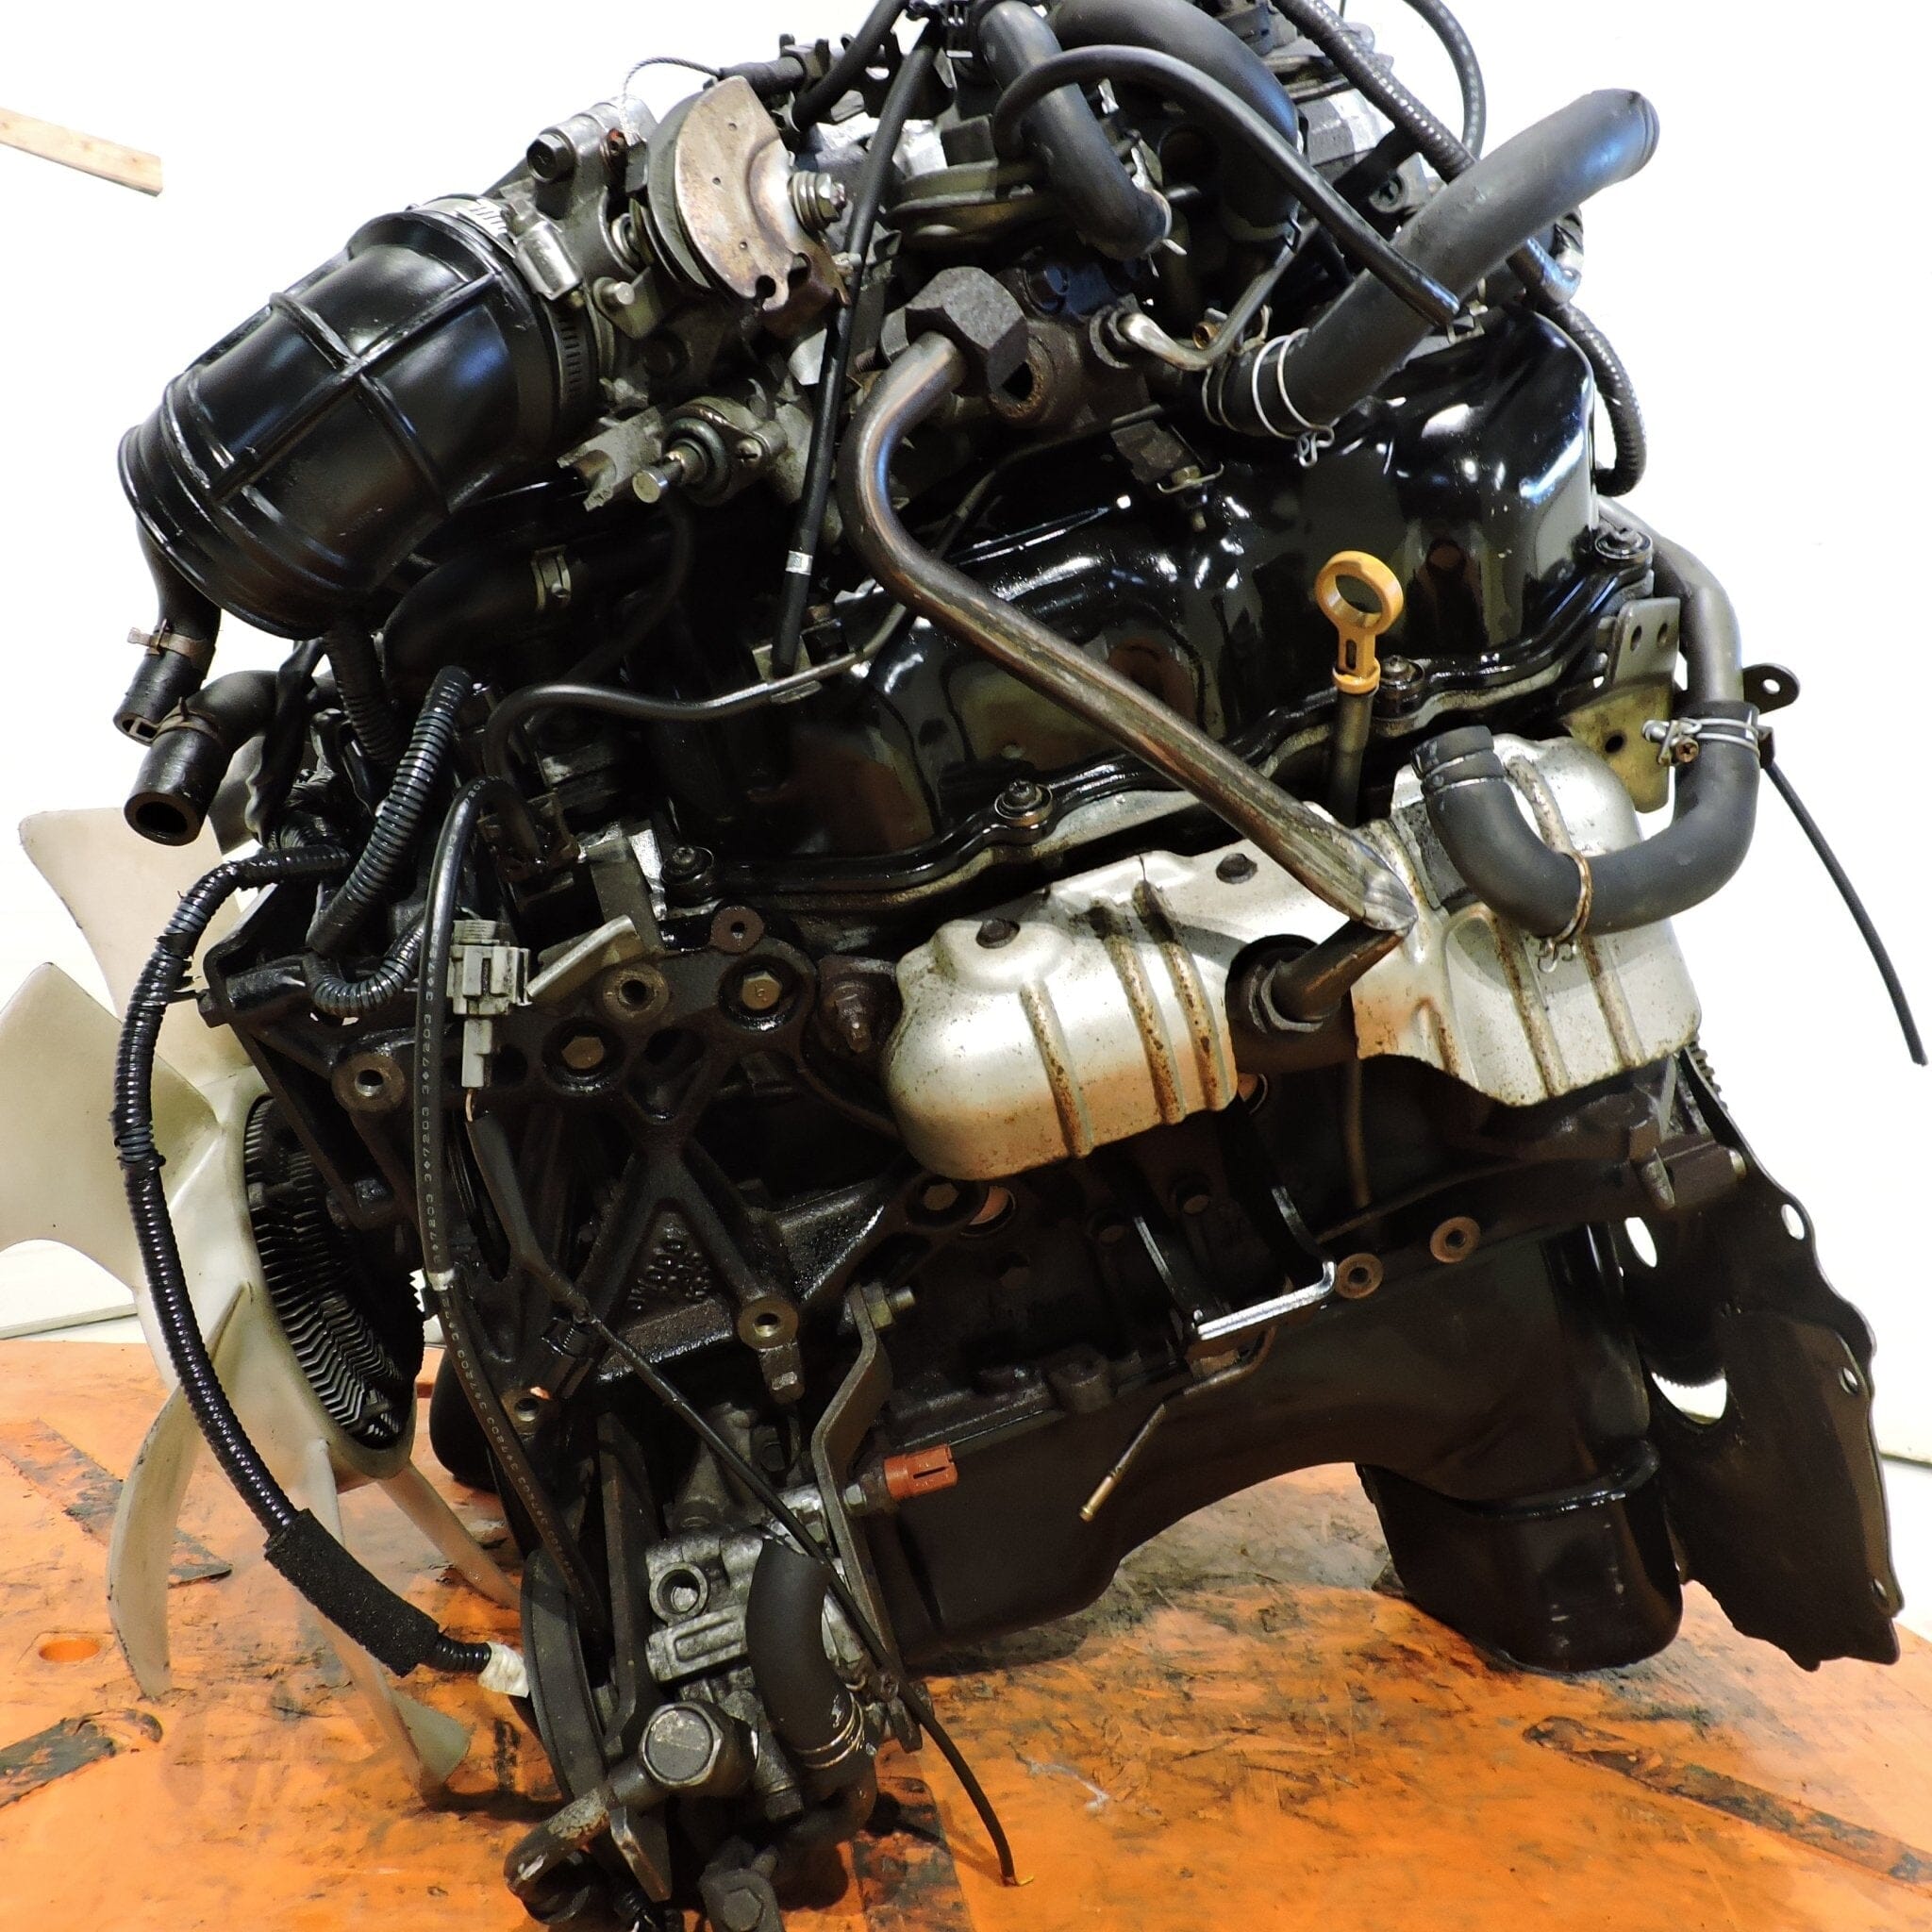 Nissan Xterra 2000-2004 3.3L JDM Engine - VG33E 6-Cylinder